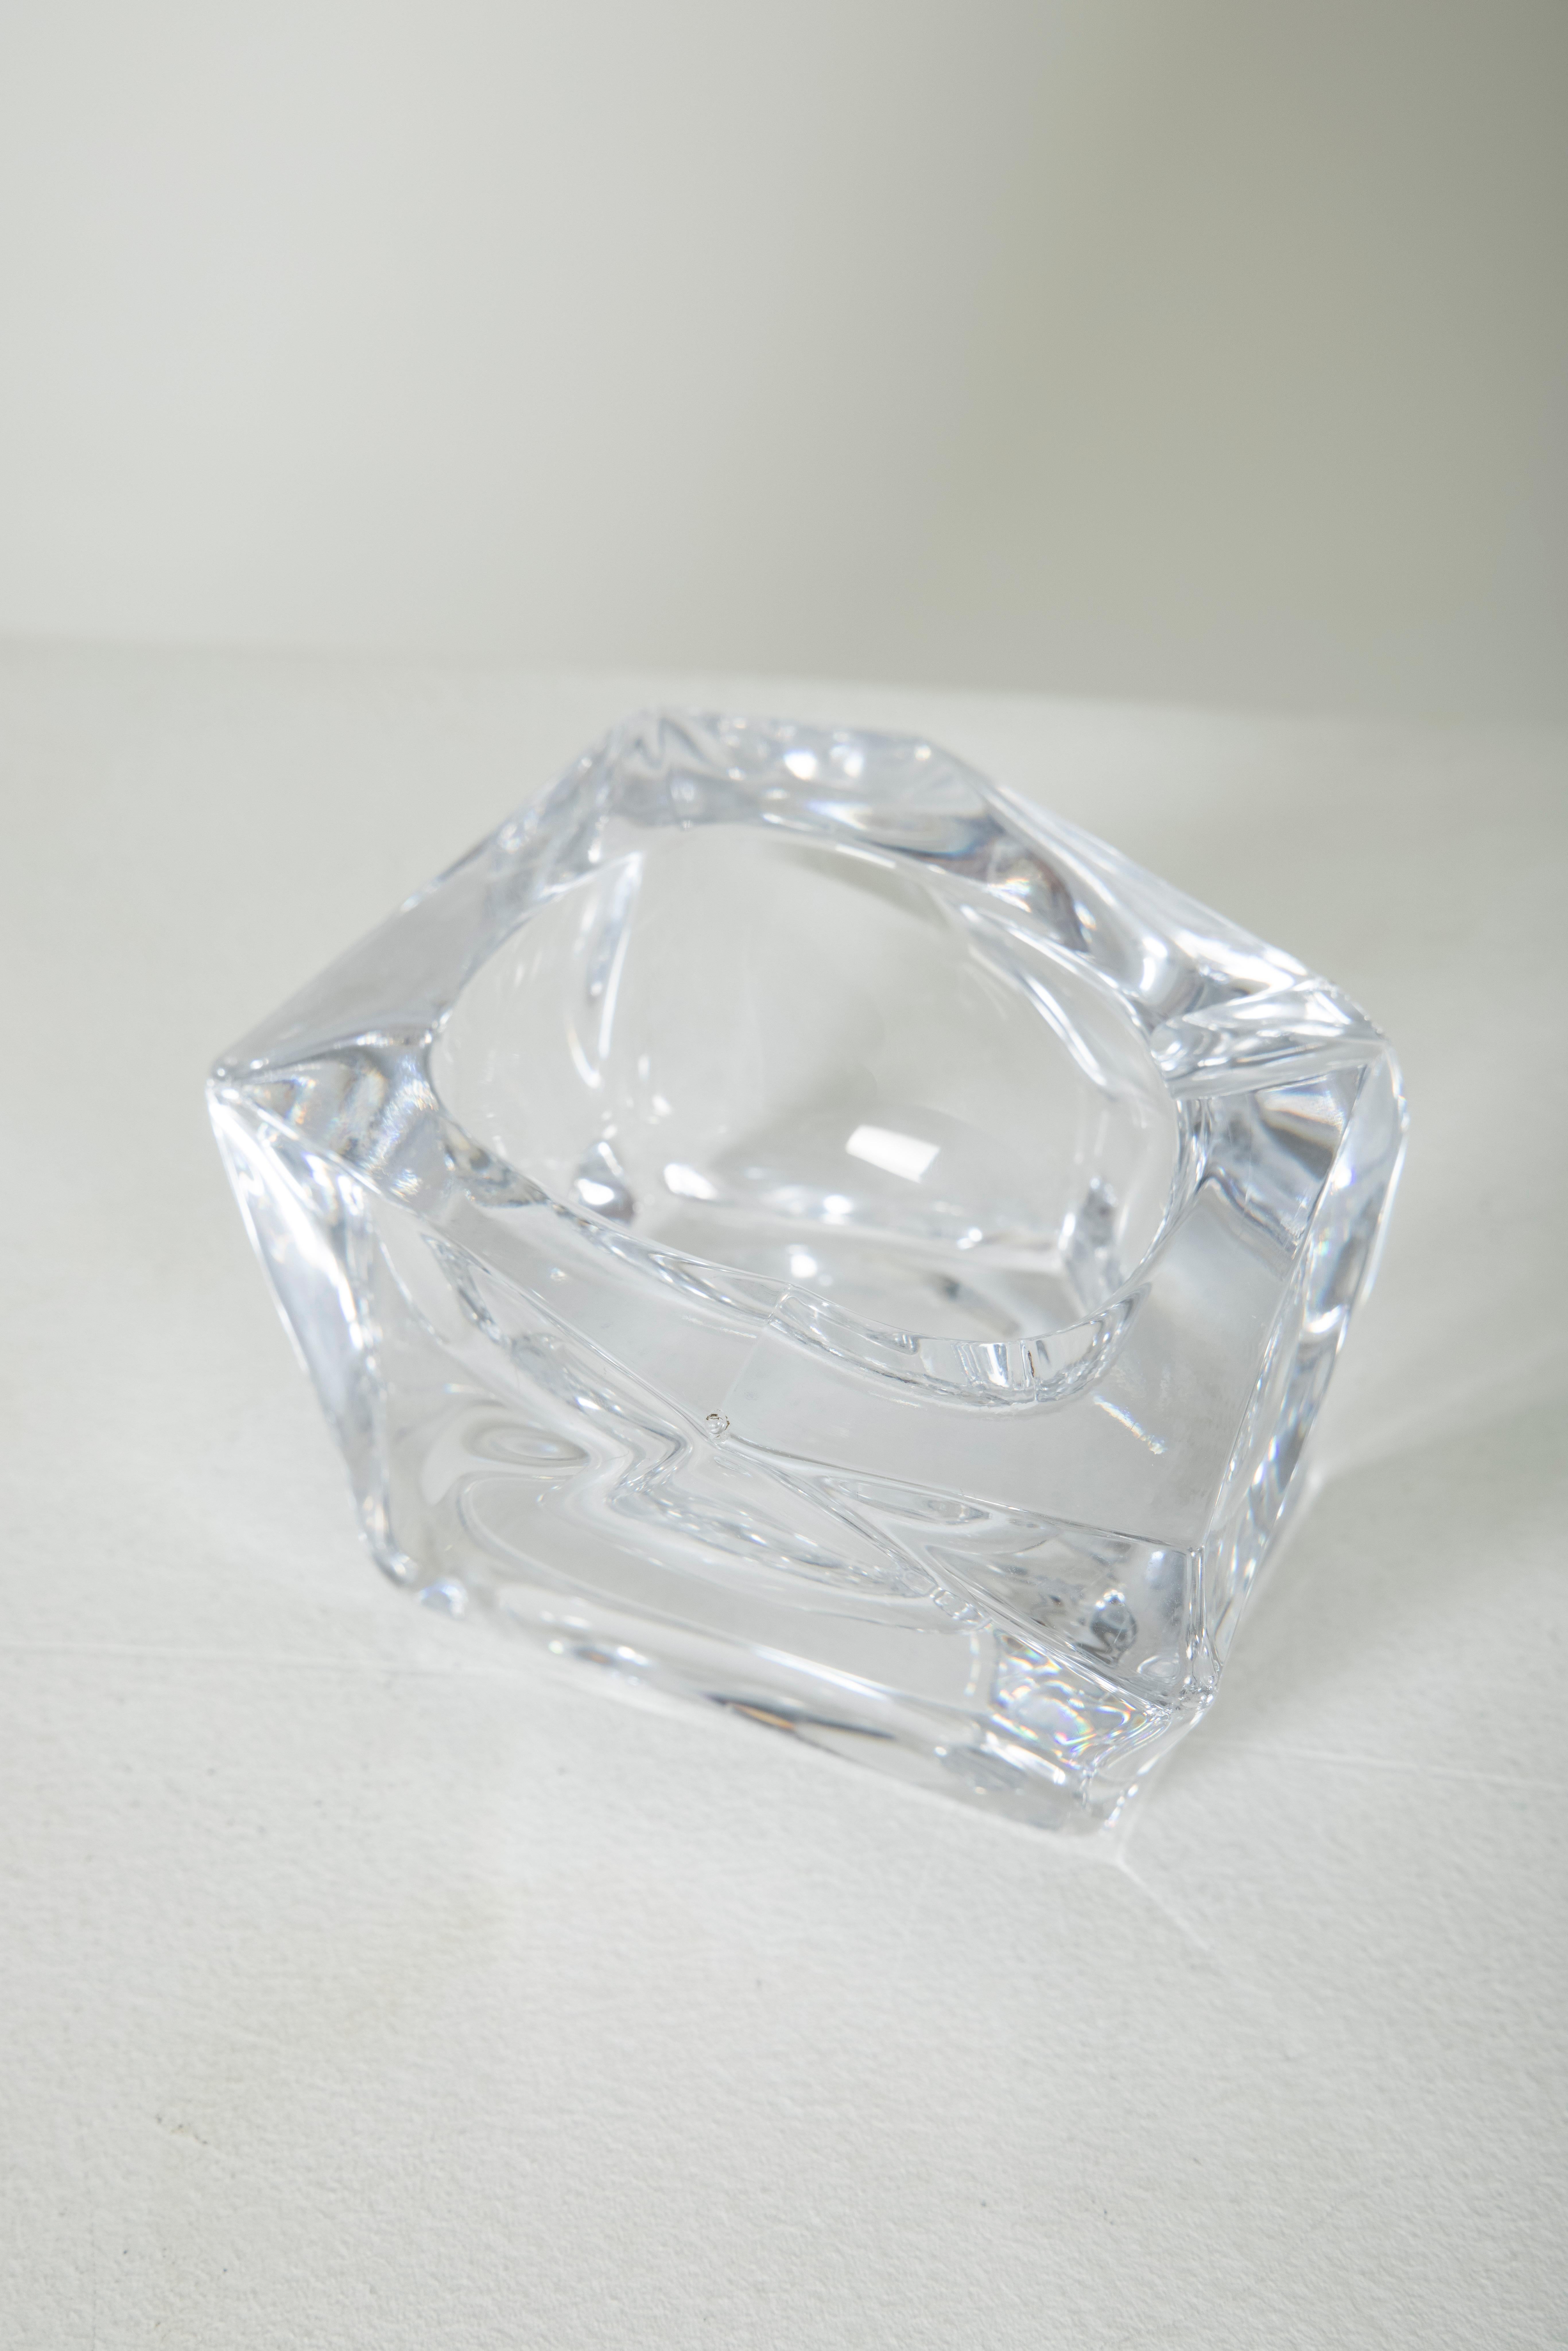 Trinket Bowl Polyhedron Crystal Daum, France 1